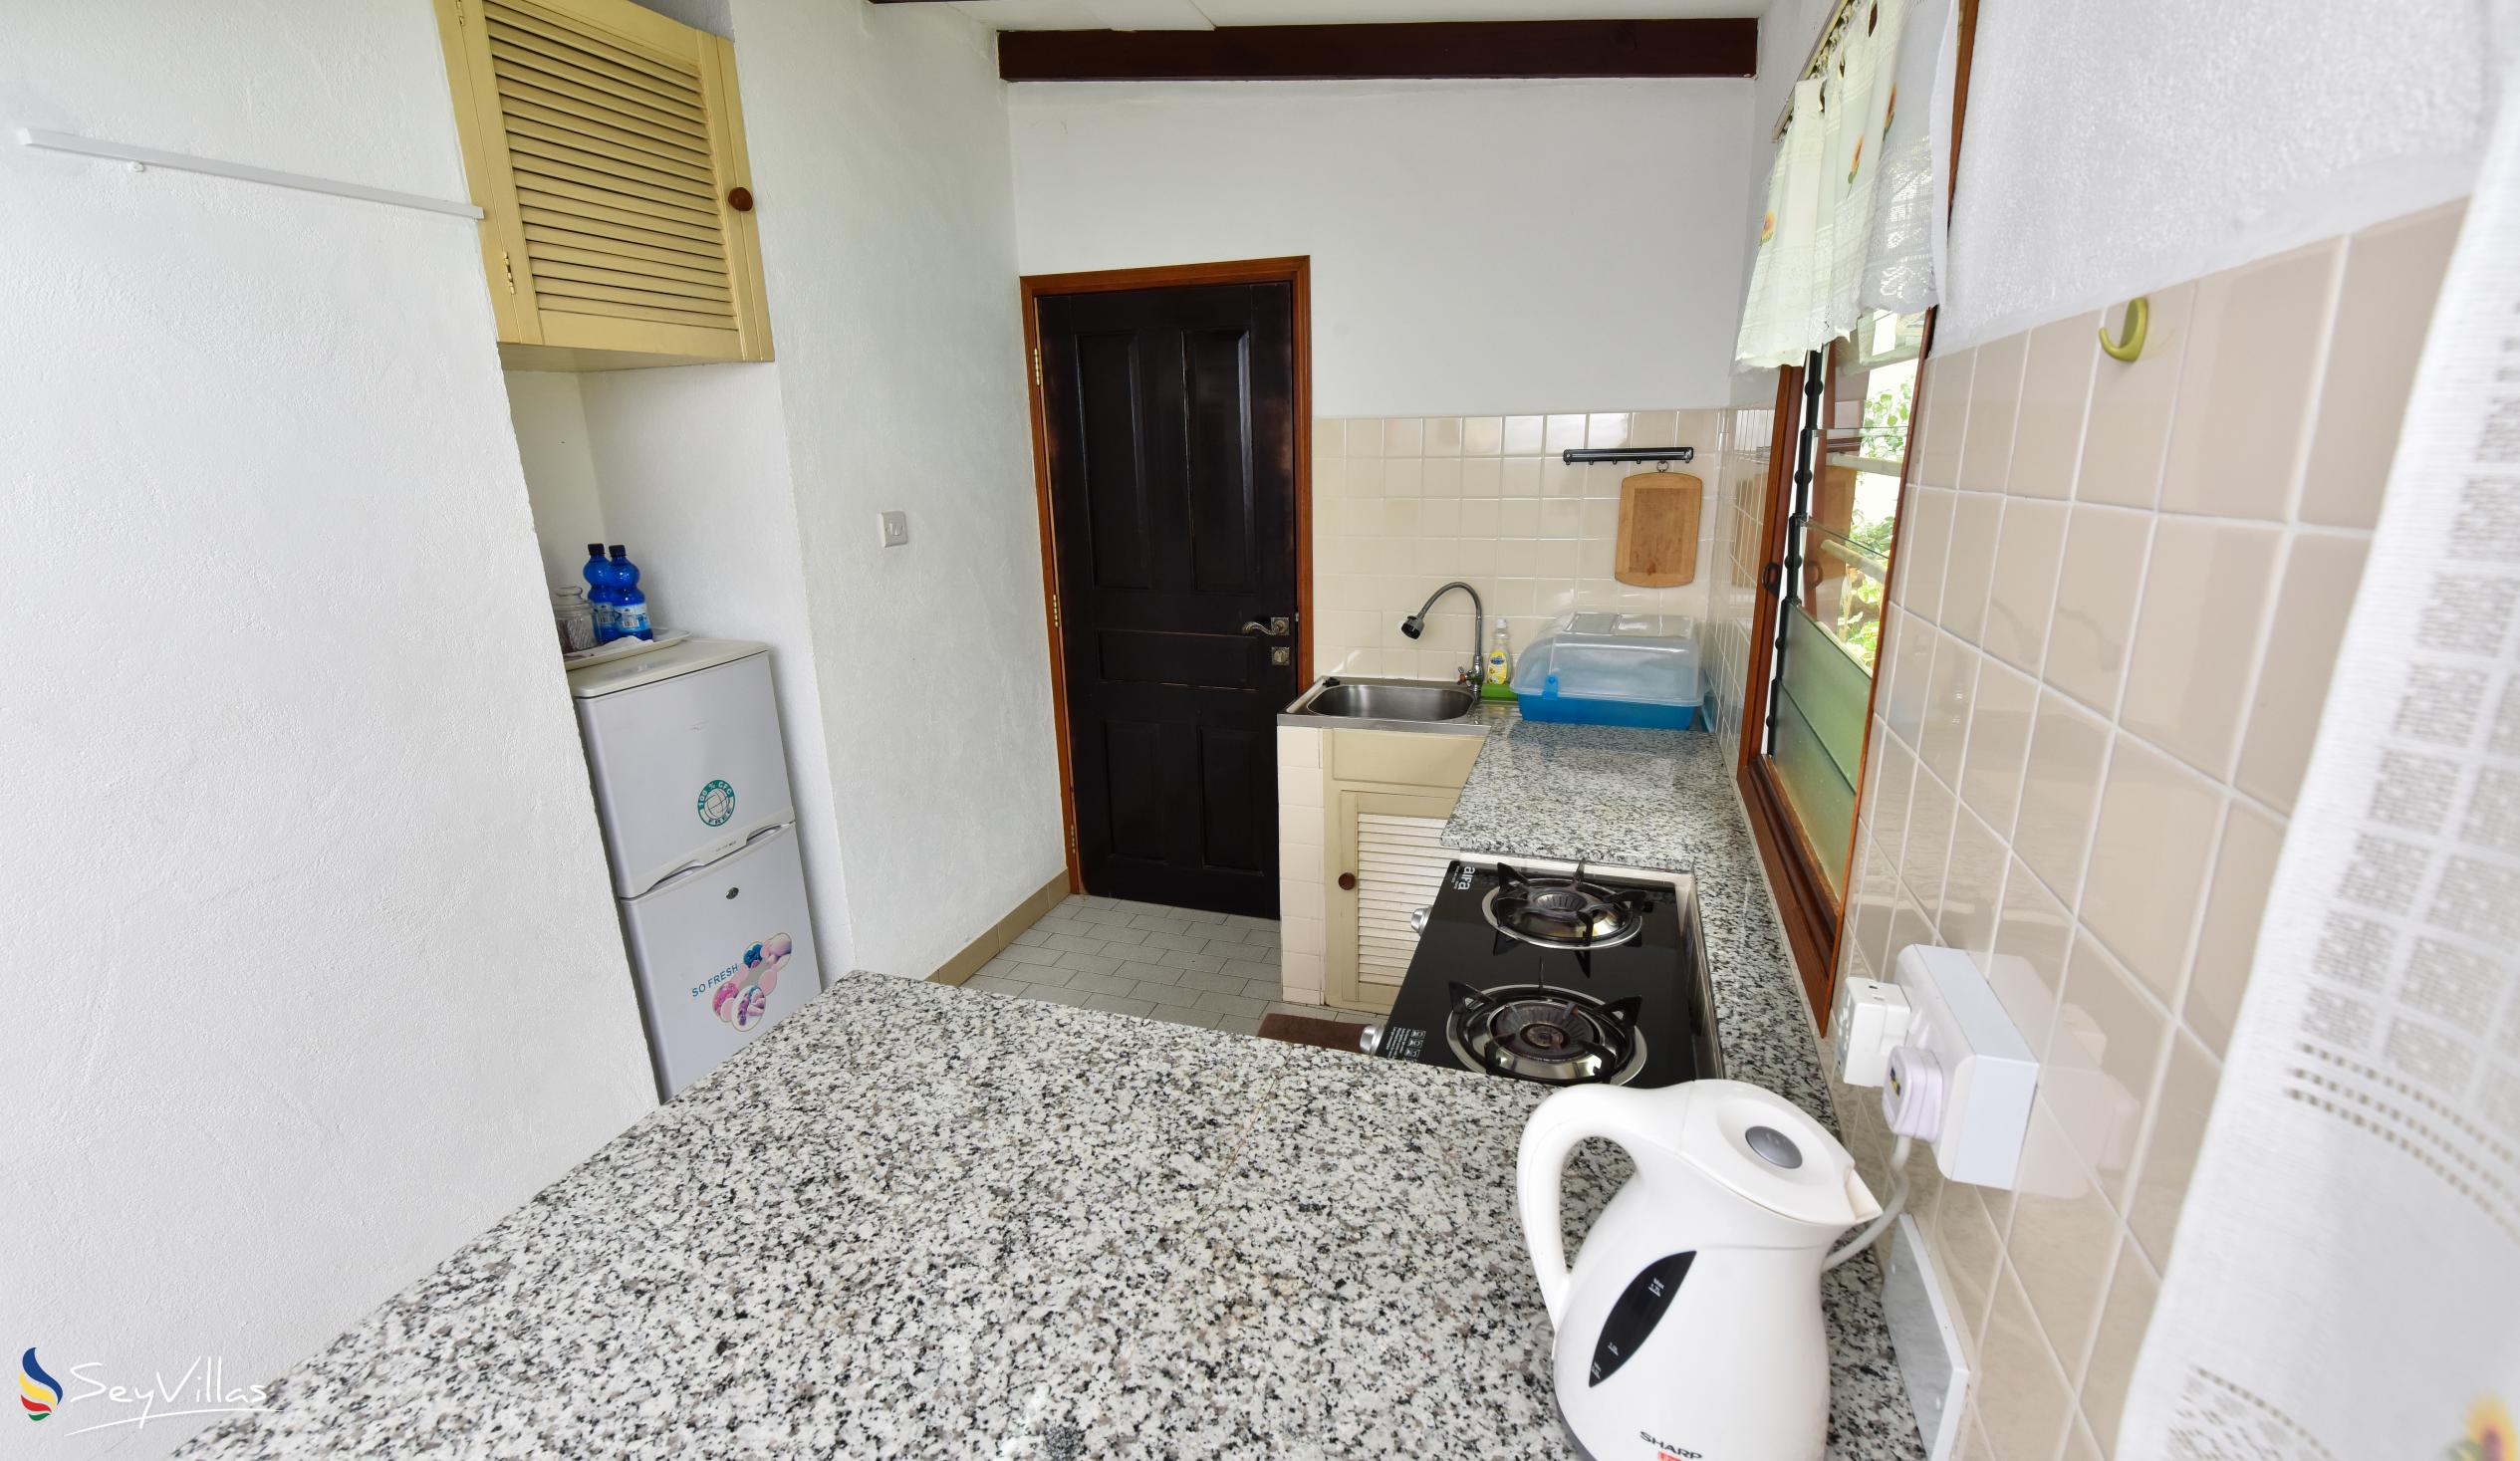 Foto 16: Anse Norwa Self Catering - Appartement rez-de-chaussée (Bonito) - Mahé (Seychelles)